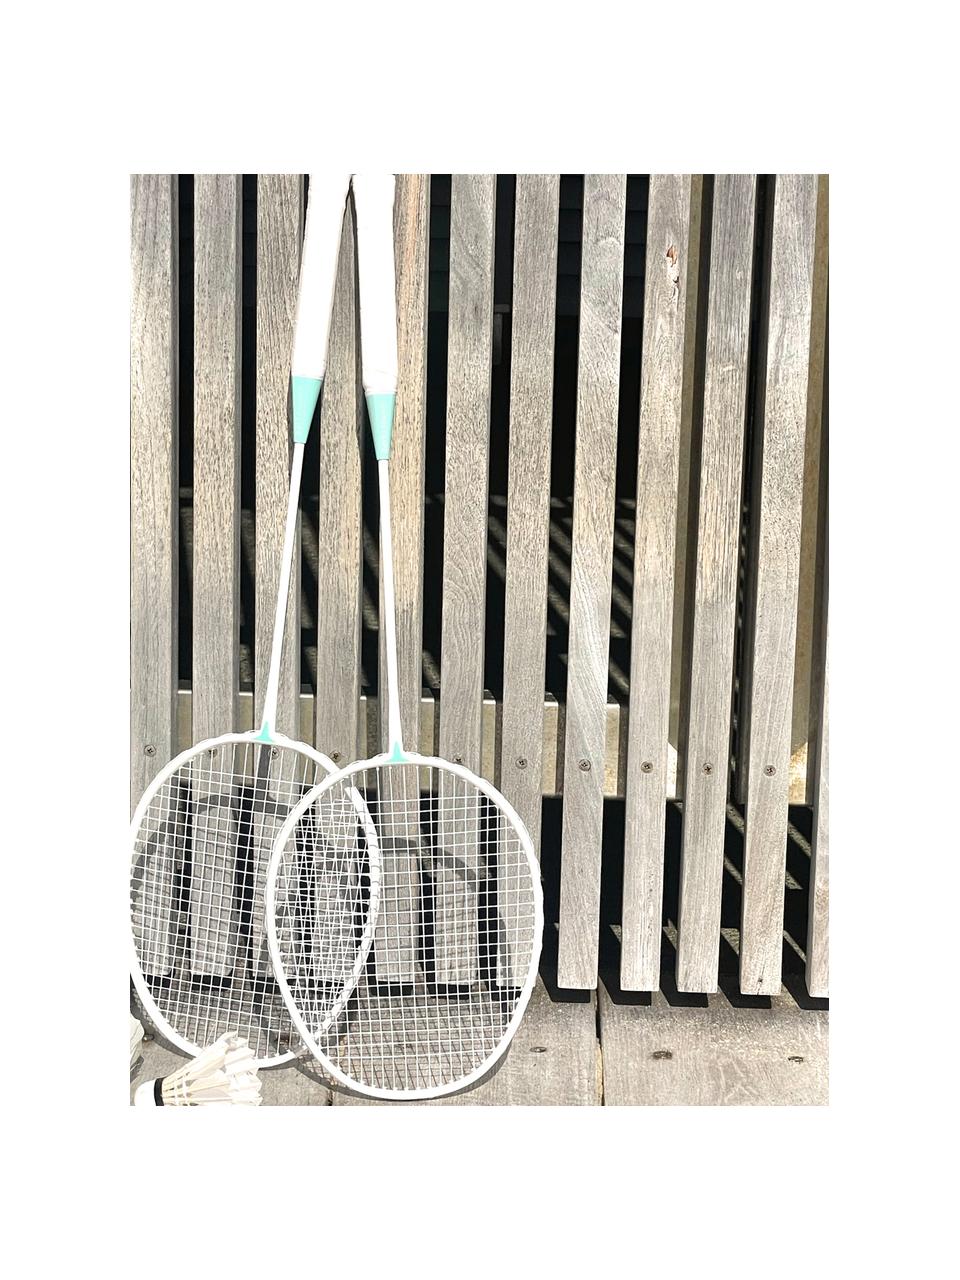 Badmintonset Rio Sun, 5-delig, Kunststof, Wit, meerkleurig, B 20 x H 67 cm